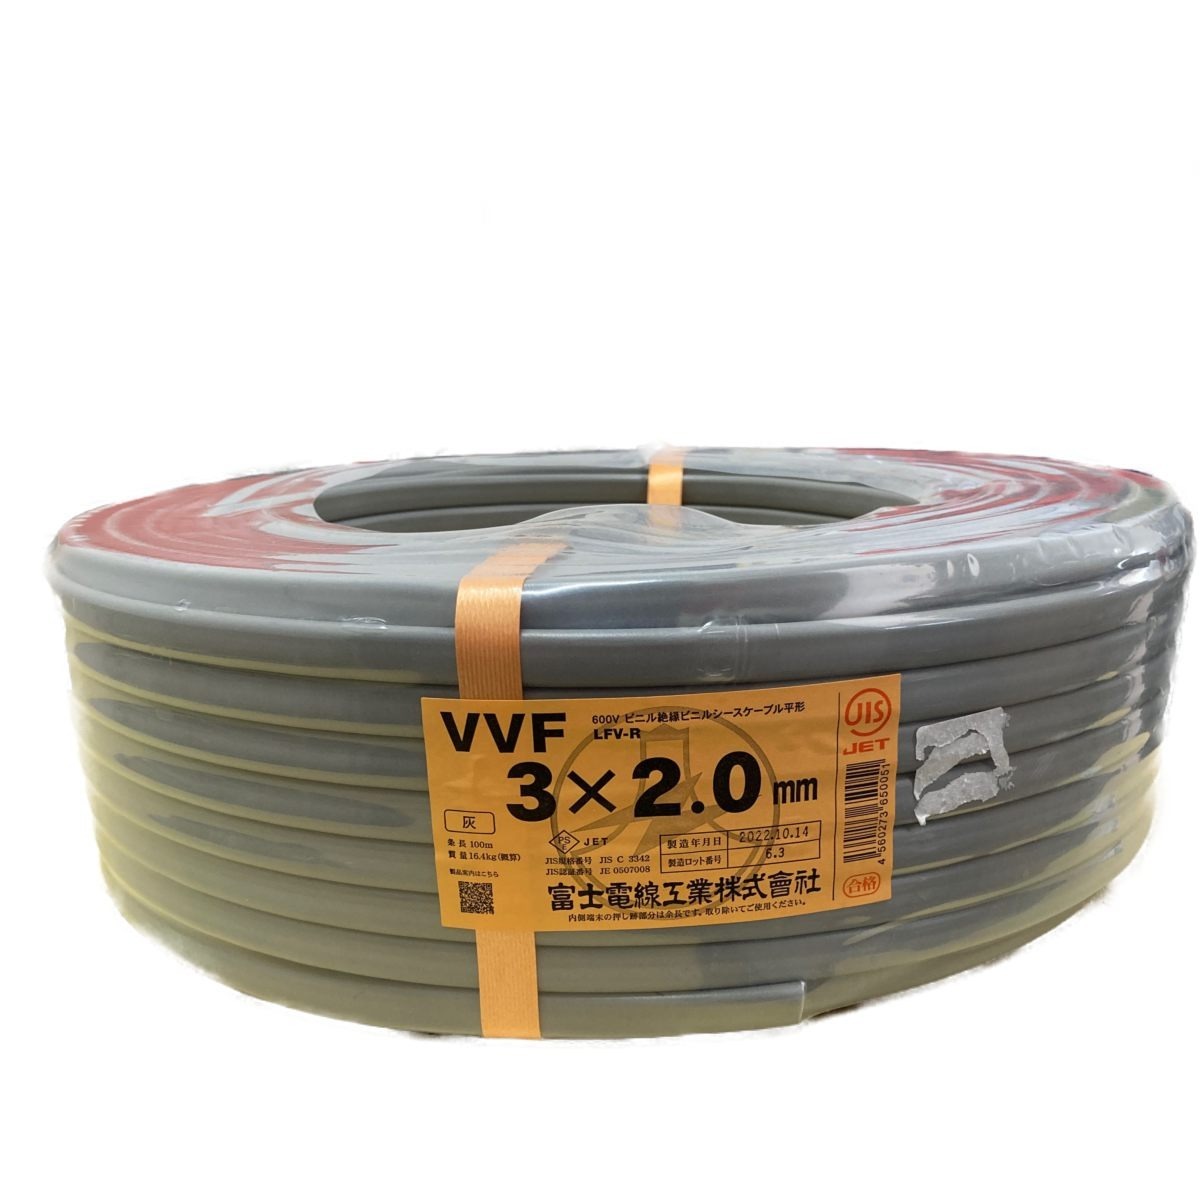 毎日続々入荷 VVF 2×2.0mm 100m 富士電線工業 - linsar.com